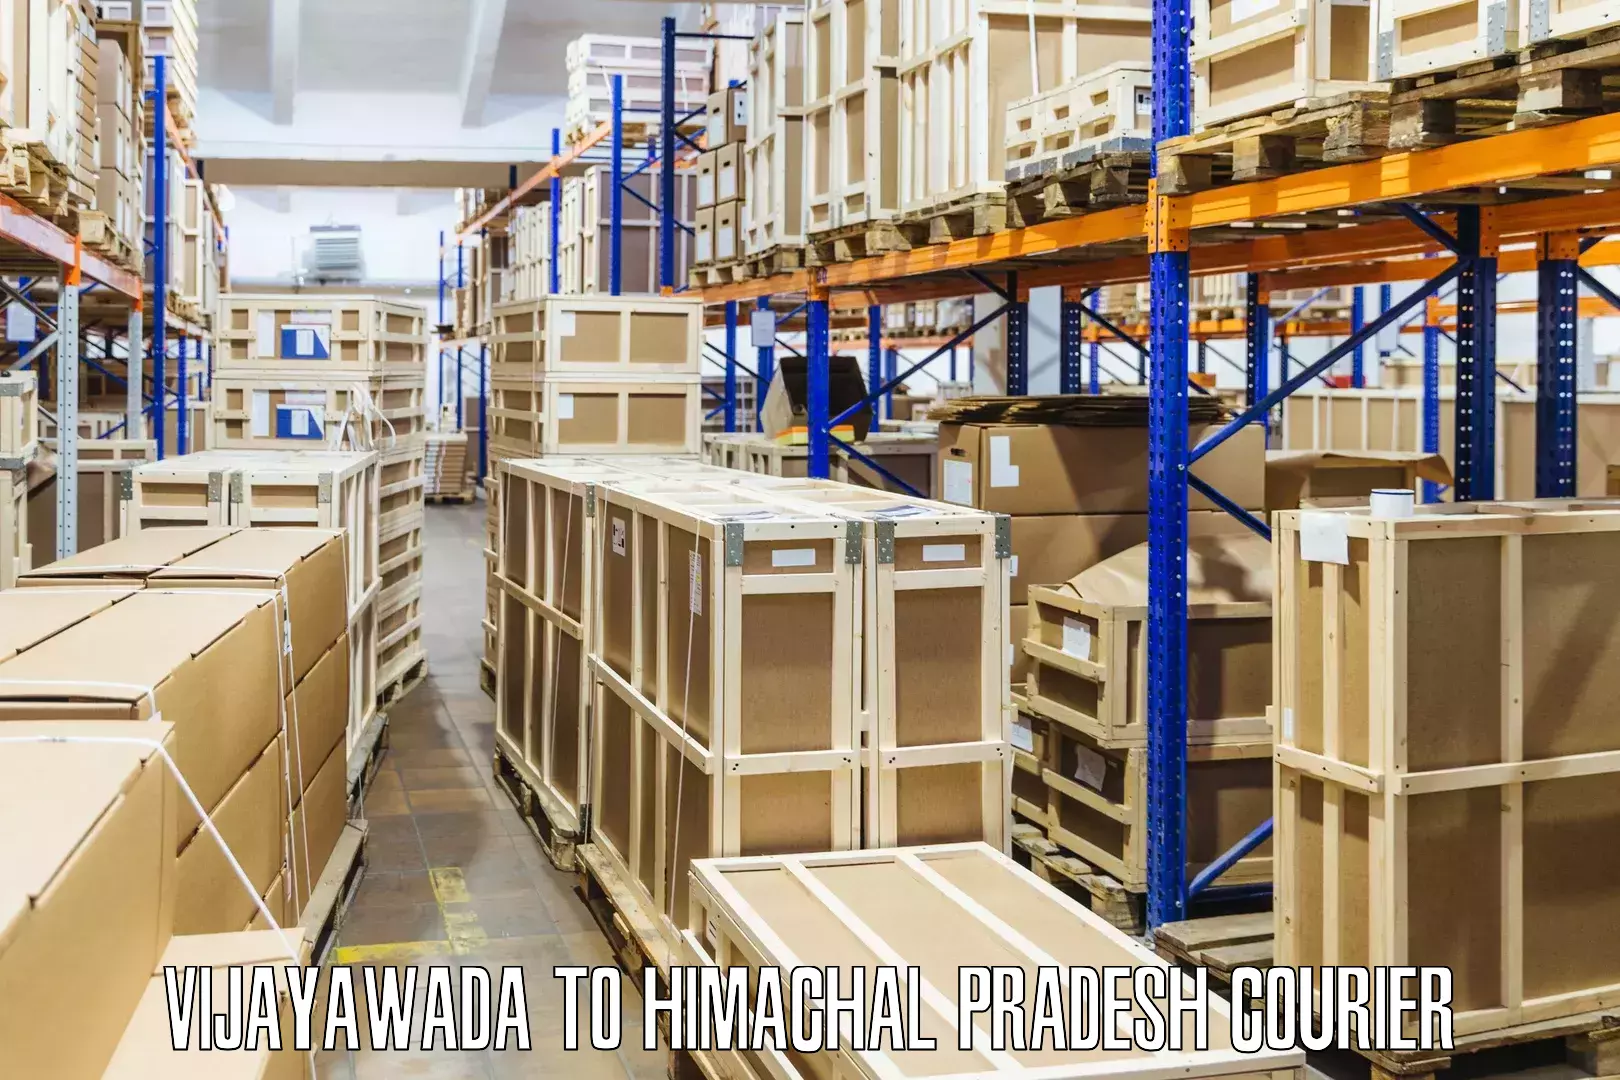 Reliable freight solutions Vijayawada to Nalagarh